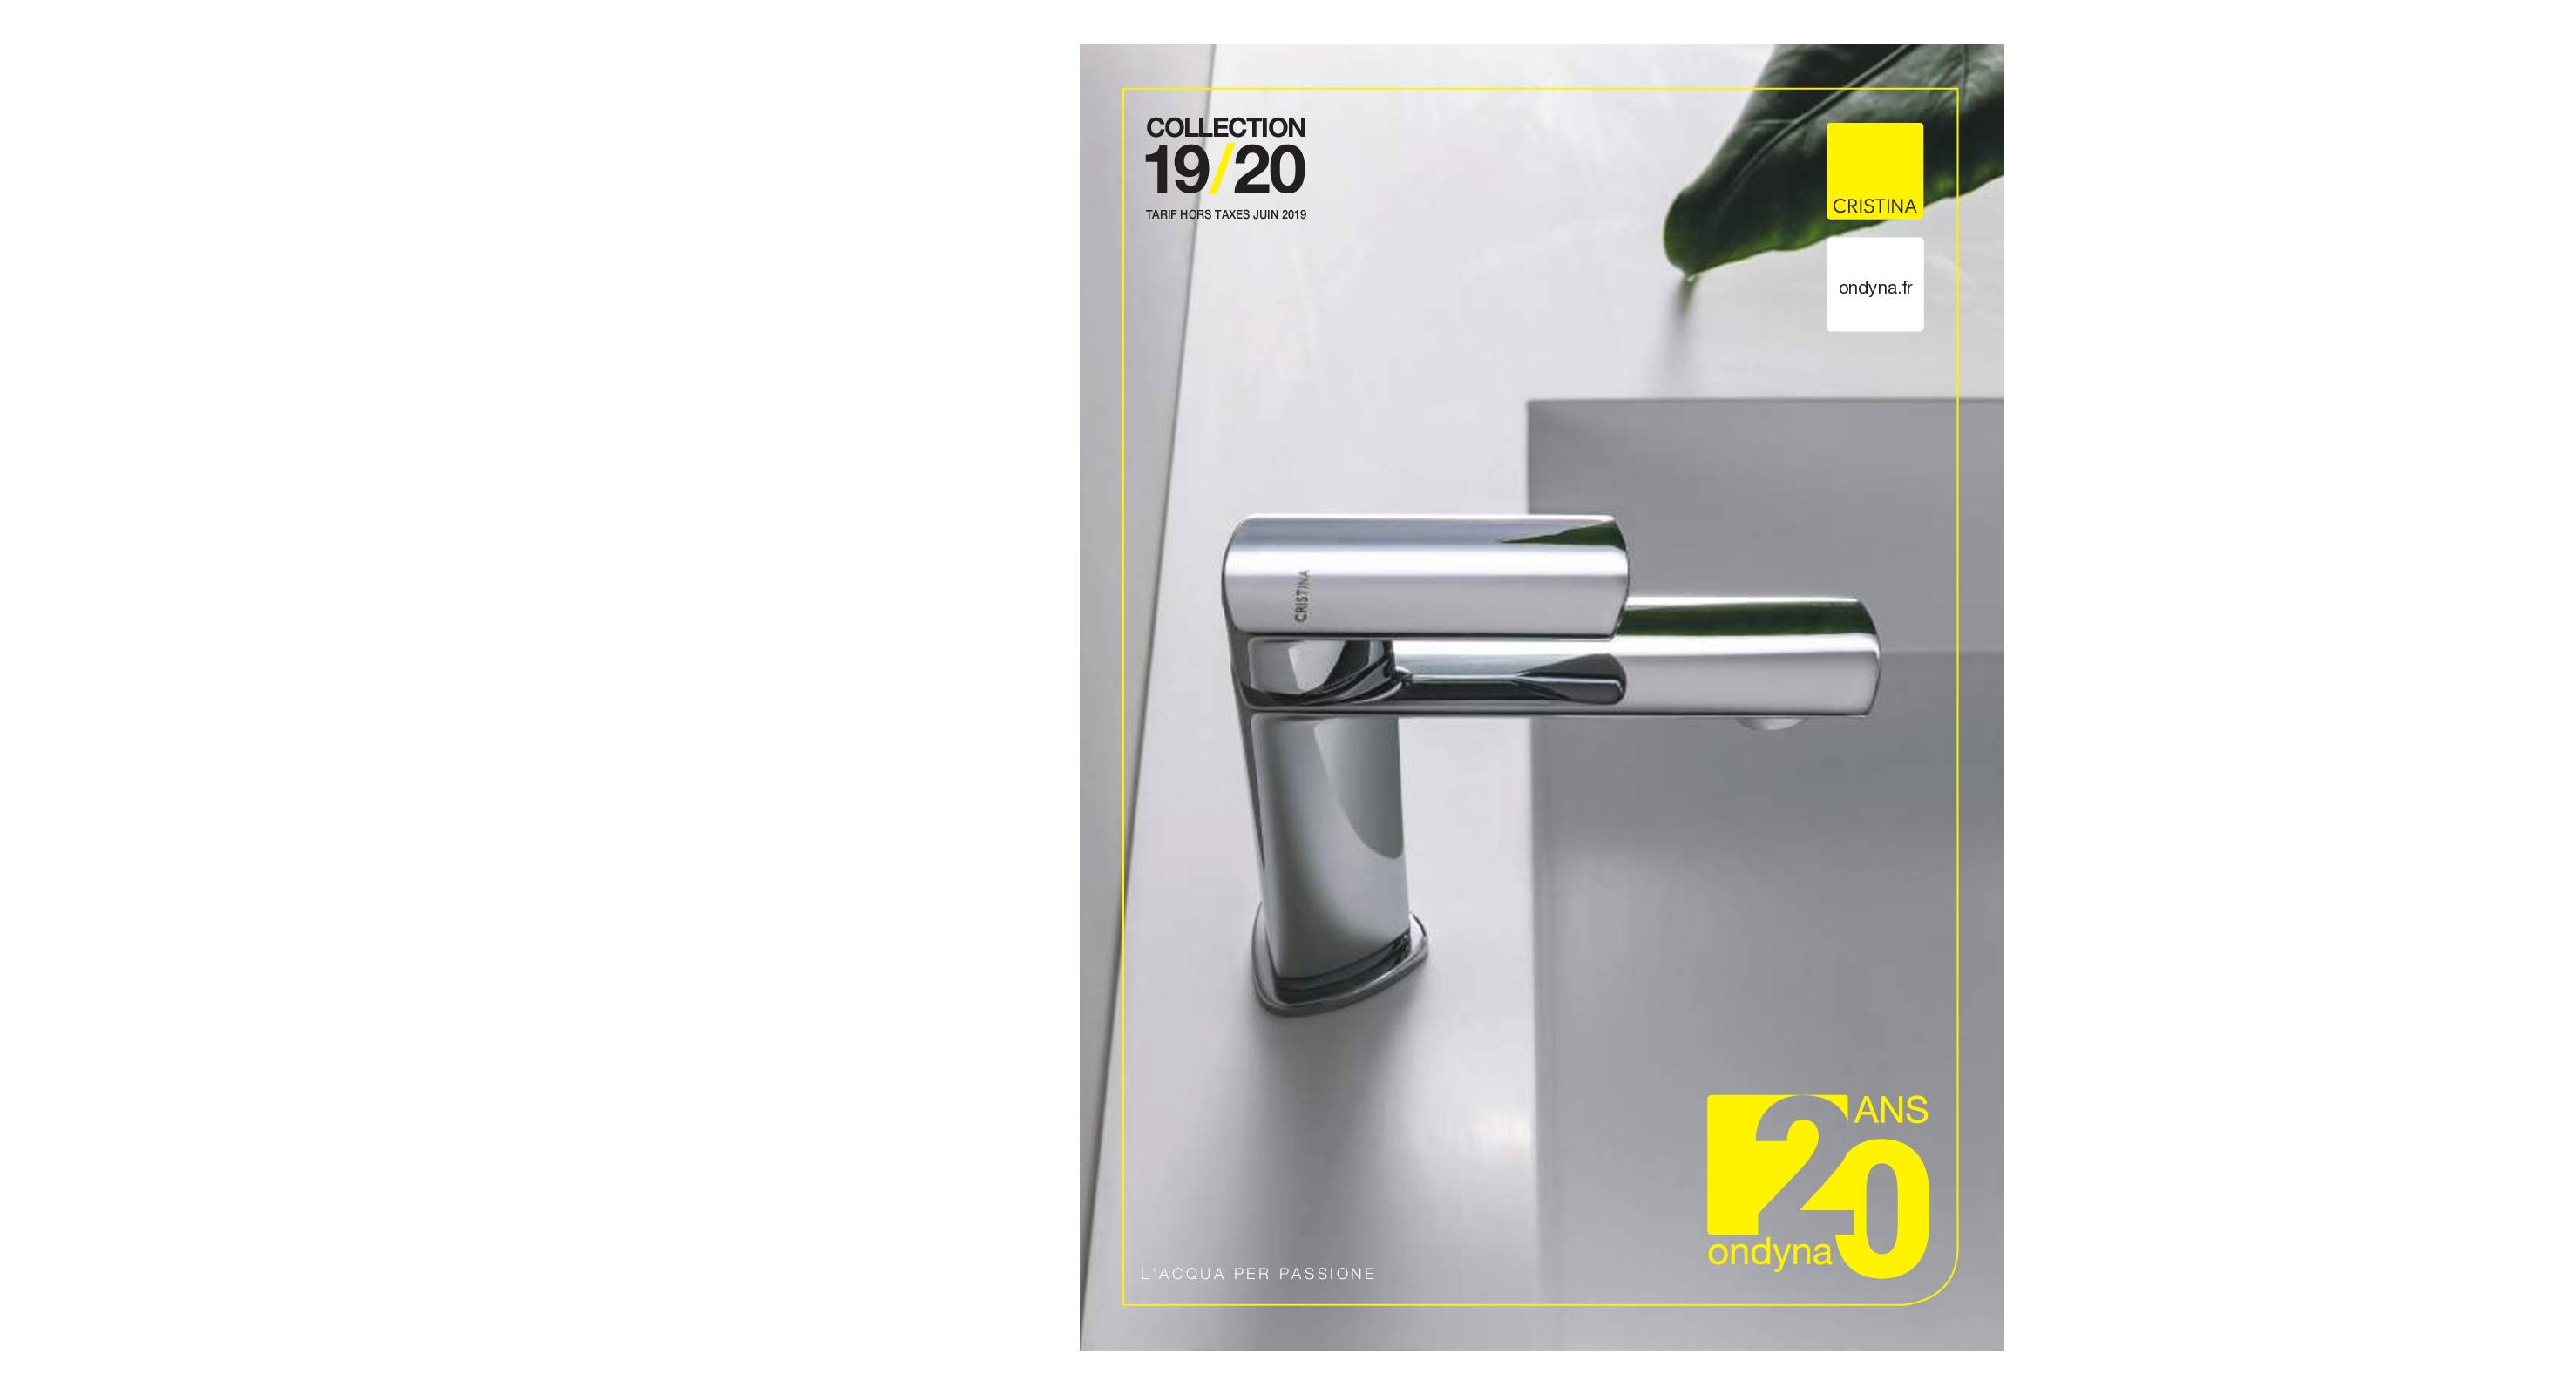 Joint de porte de douche pour verre de 4-6mm - couvre les espaces jusqu'à  20mm - Remplacement parfait de l'étanchéité de la paroi de douche claire,  longueur réglable